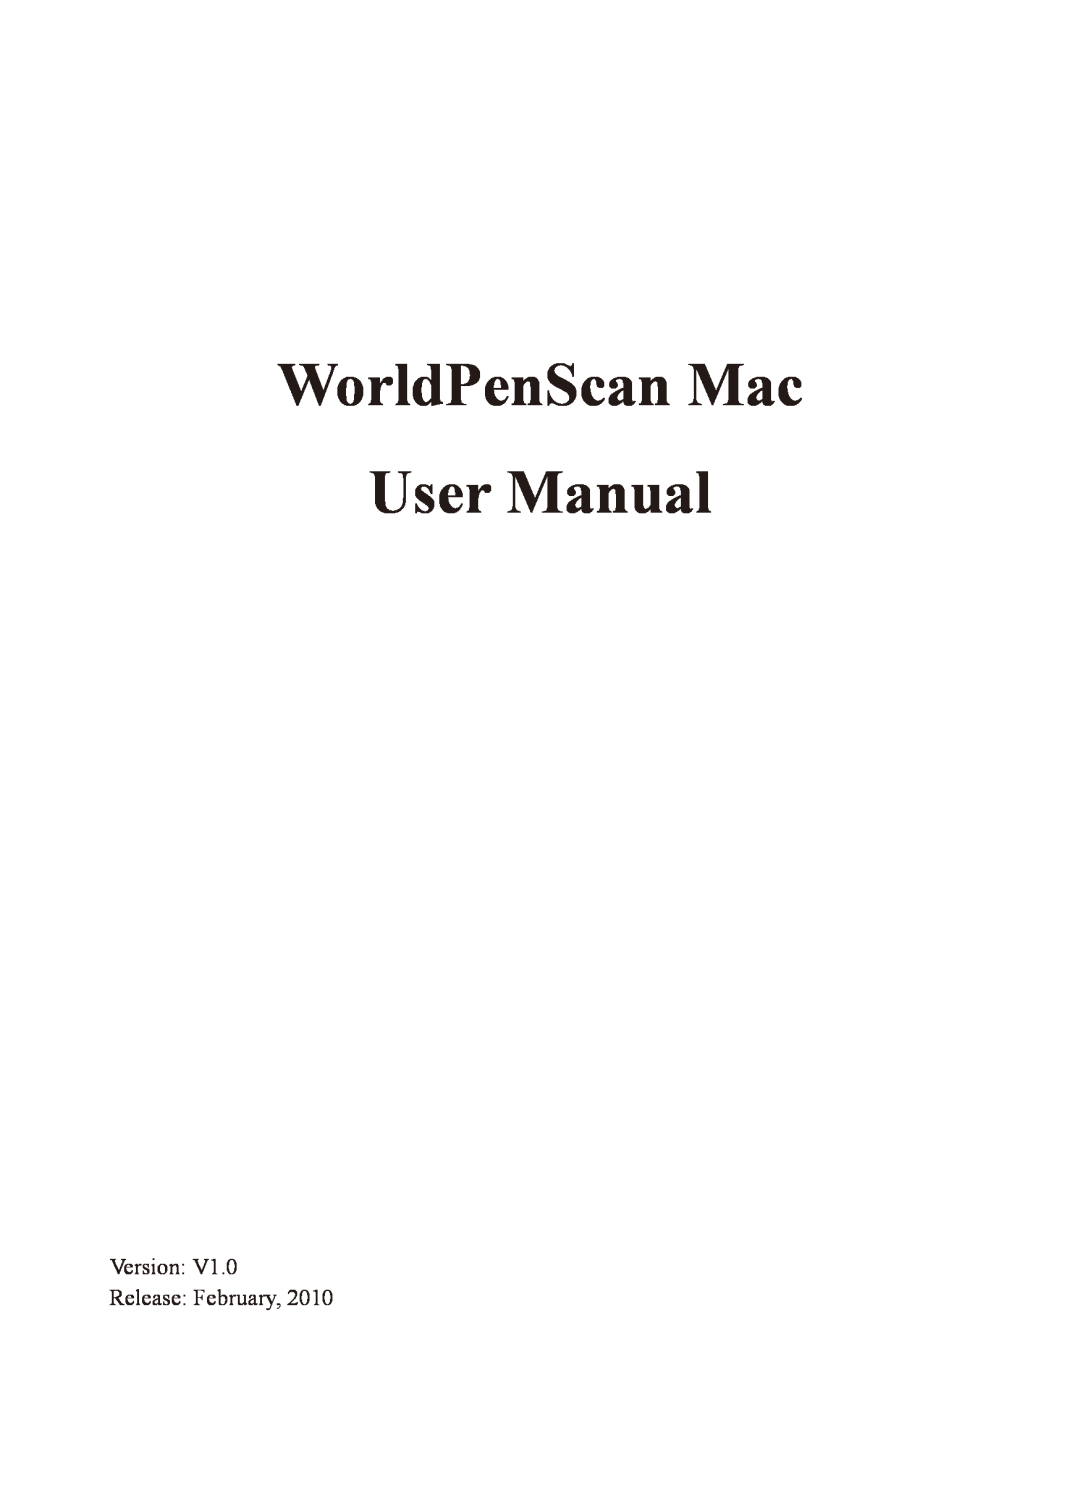 Penpower WorldPenScan Pro user manual WorldPenScan Mac, Version Release February 